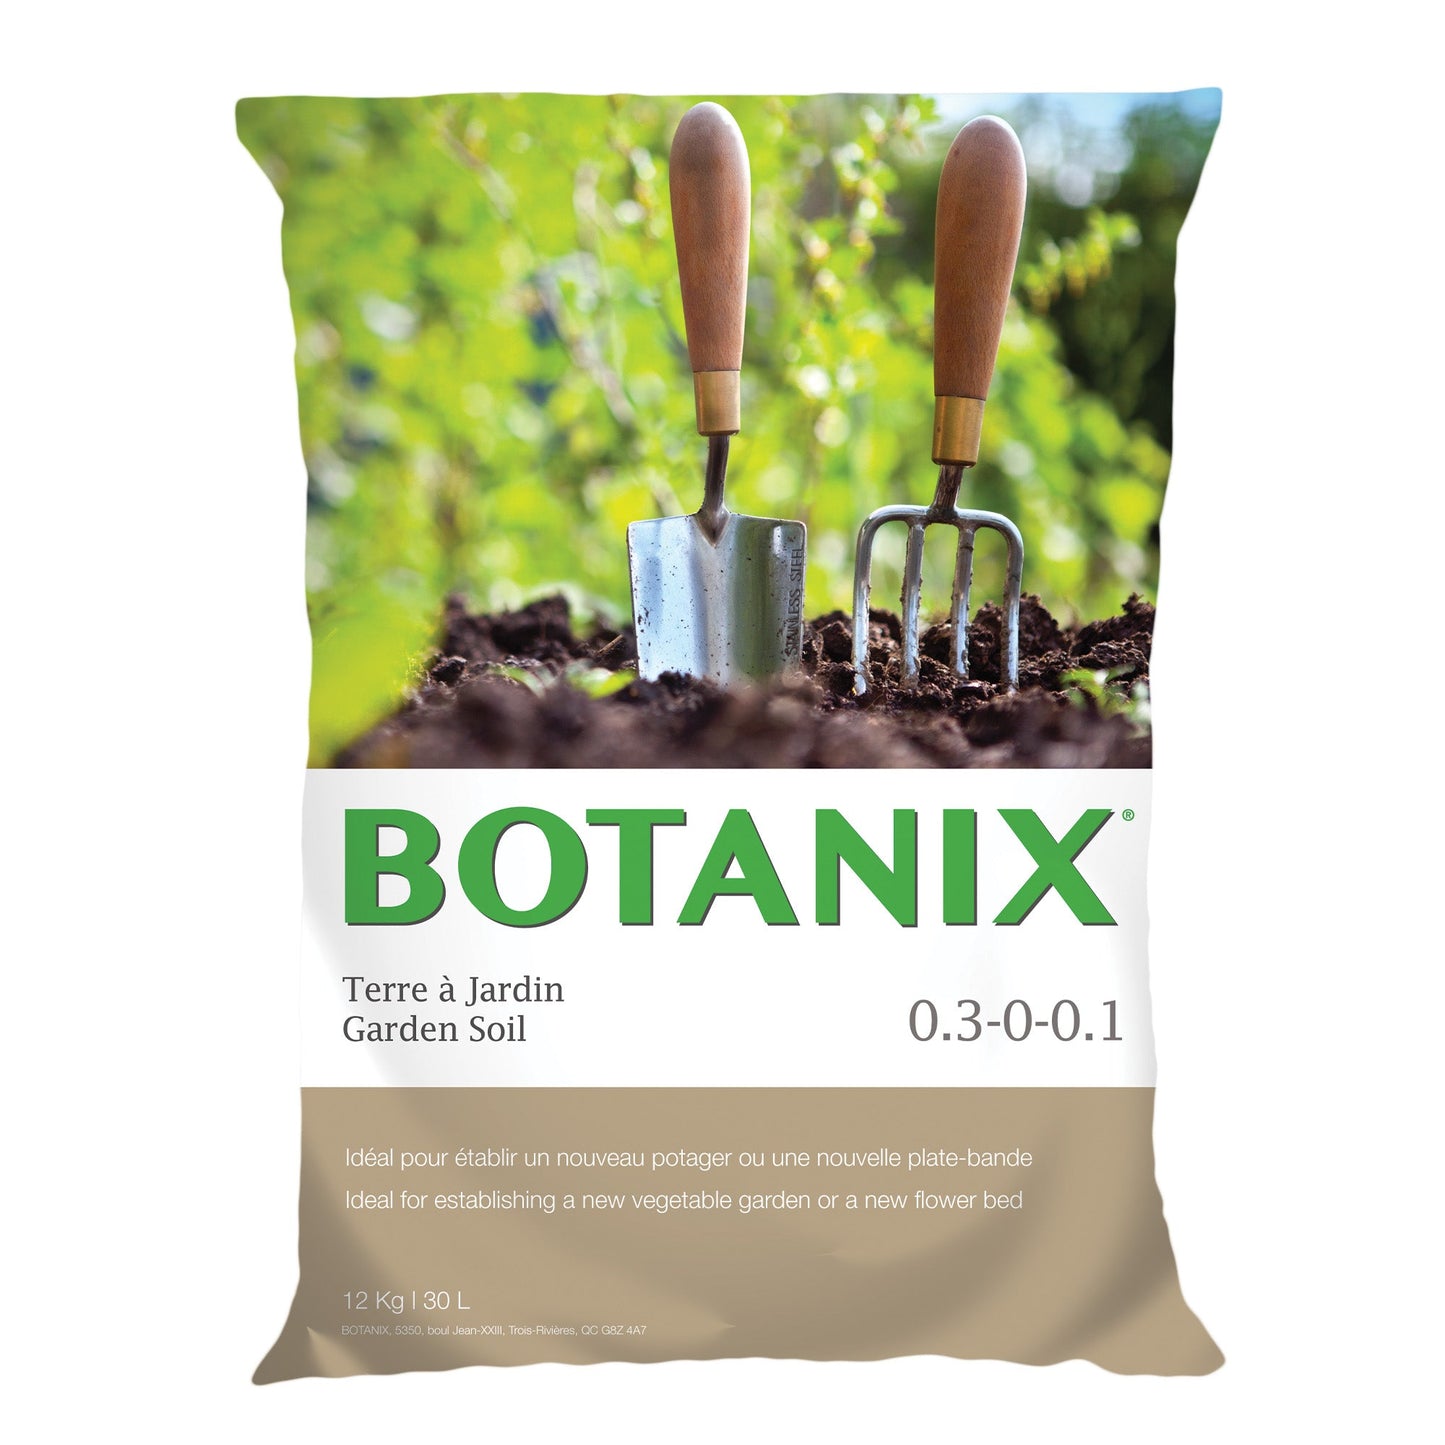 Botanix Garden soil